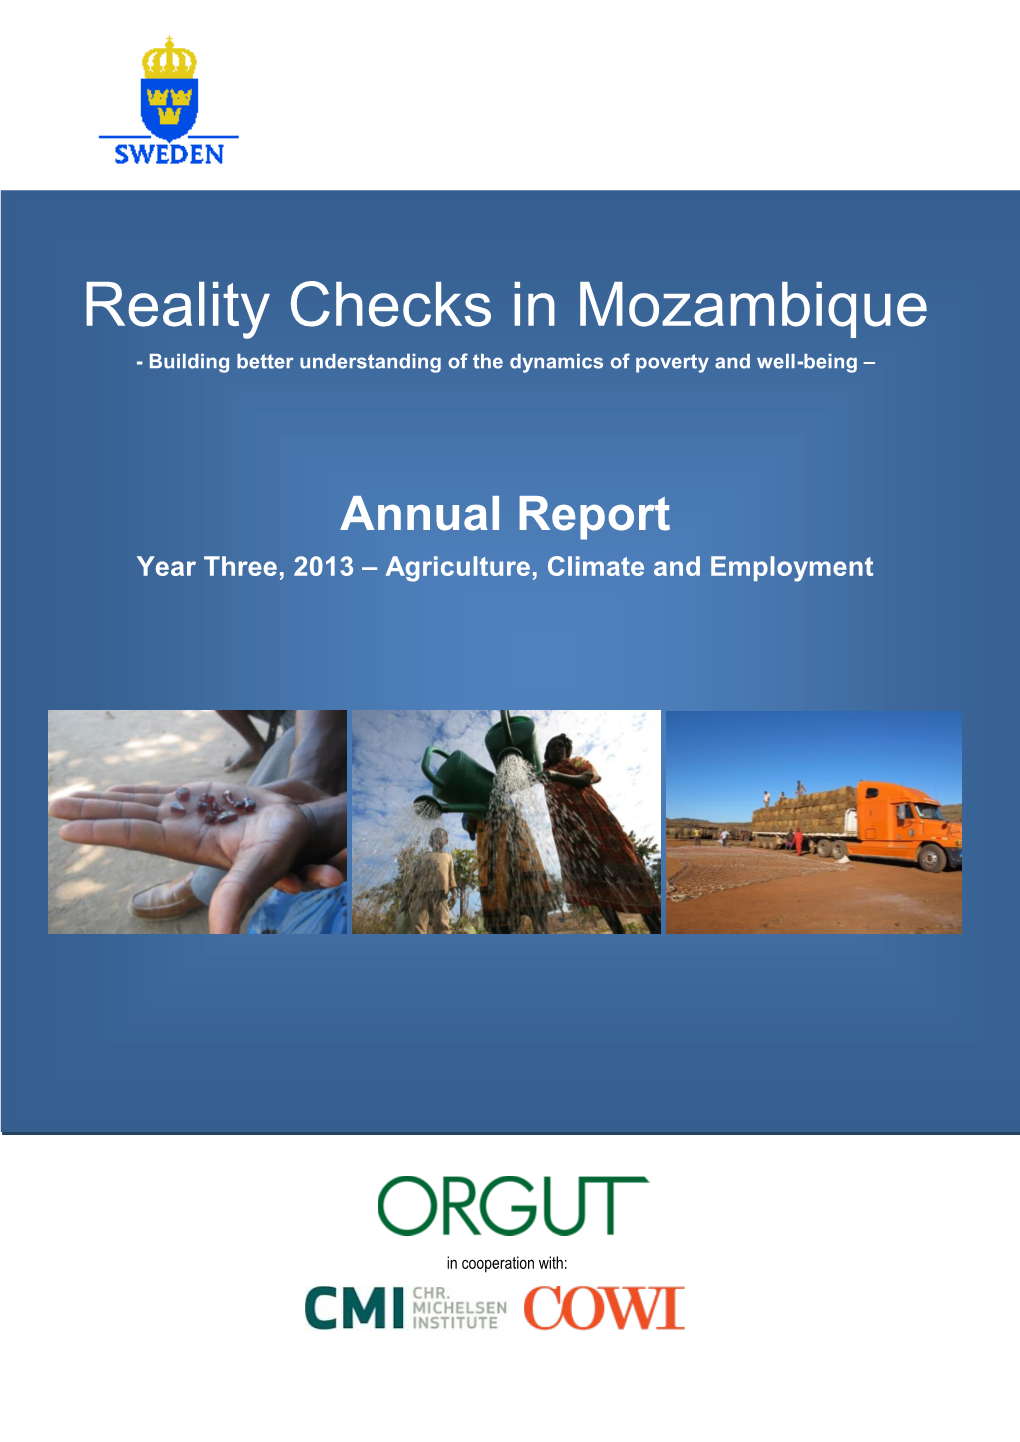 Reality Check Mozambique